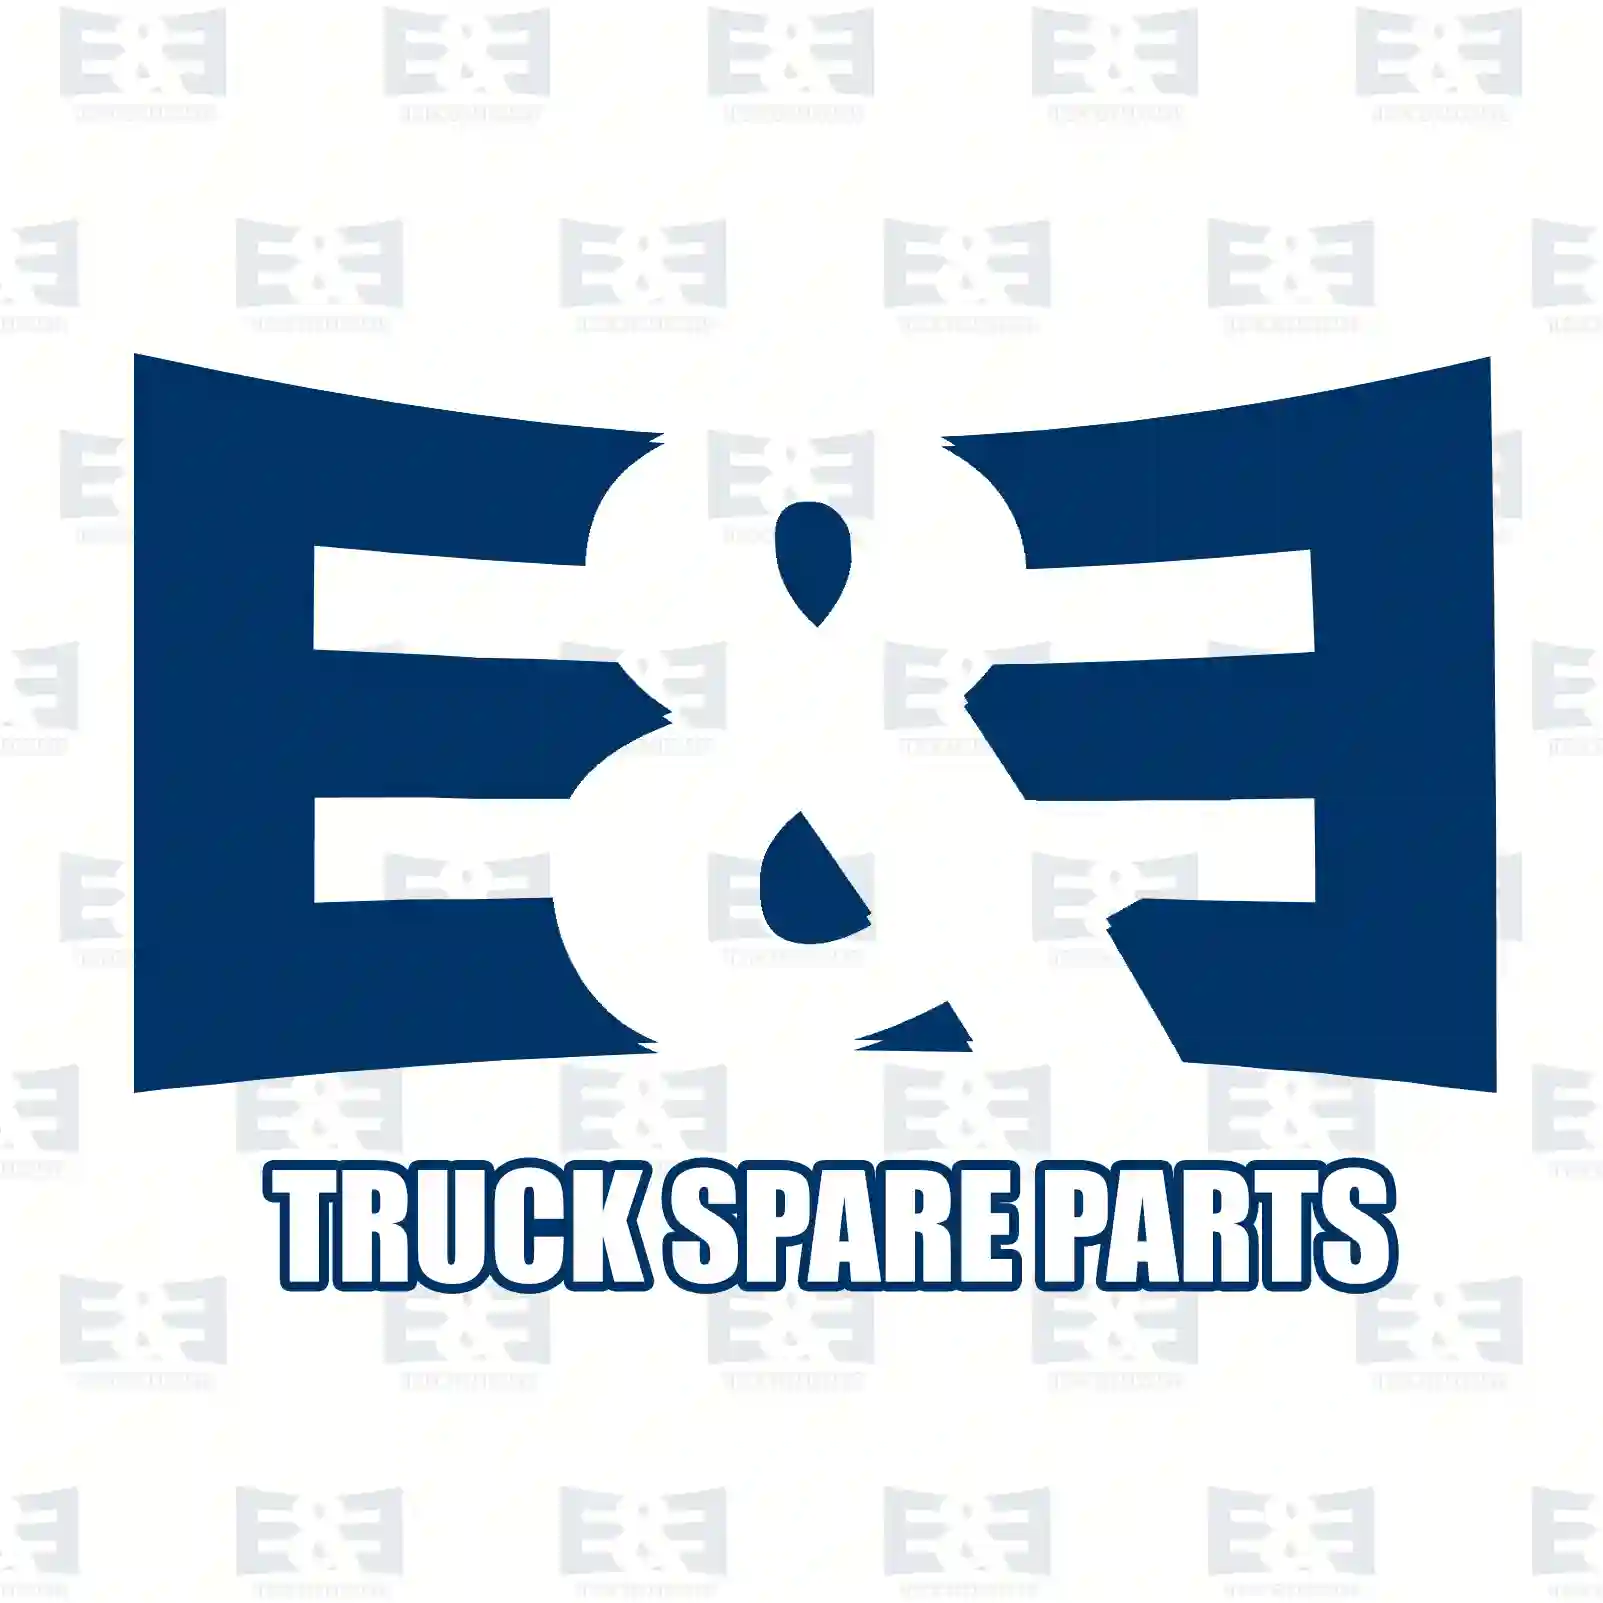 O-ring, black, 2E2285065, 0259978448, ZG01859-0008 ||  2E2285065 E&E Truck Spare Parts | Truck Spare Parts, Auotomotive Spare Parts O-ring, black, 2E2285065, 0259978448, ZG01859-0008 ||  2E2285065 E&E Truck Spare Parts | Truck Spare Parts, Auotomotive Spare Parts